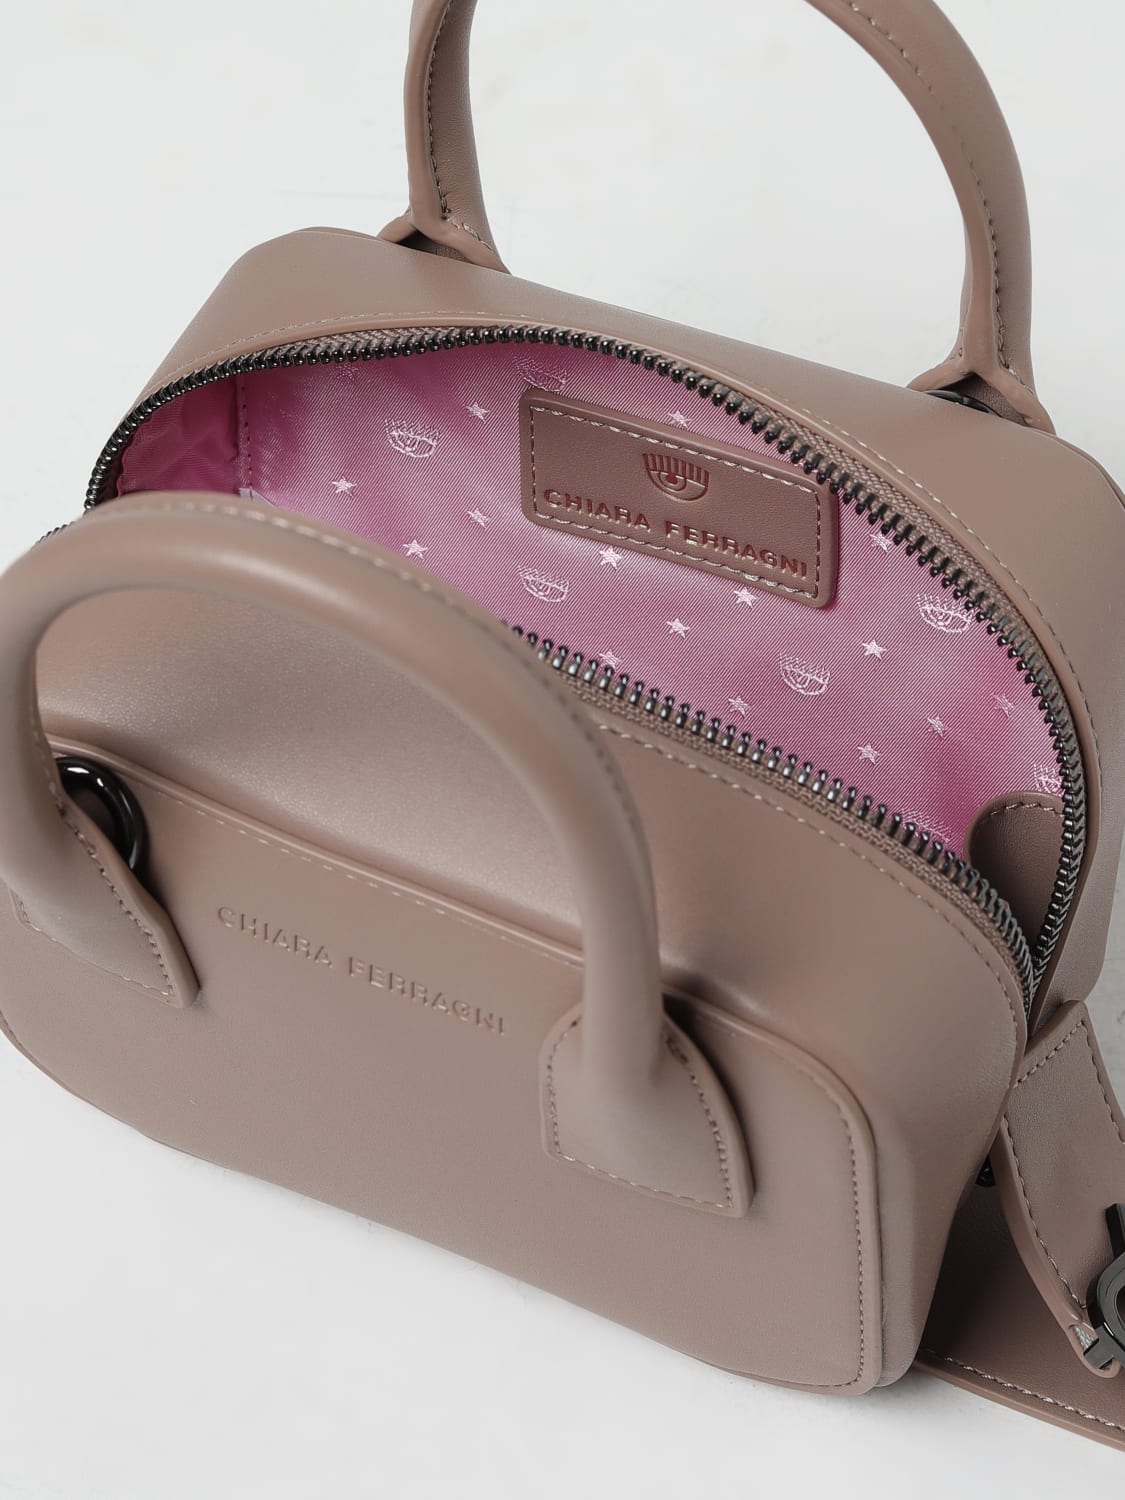 Chiara Ferragni's Handbags